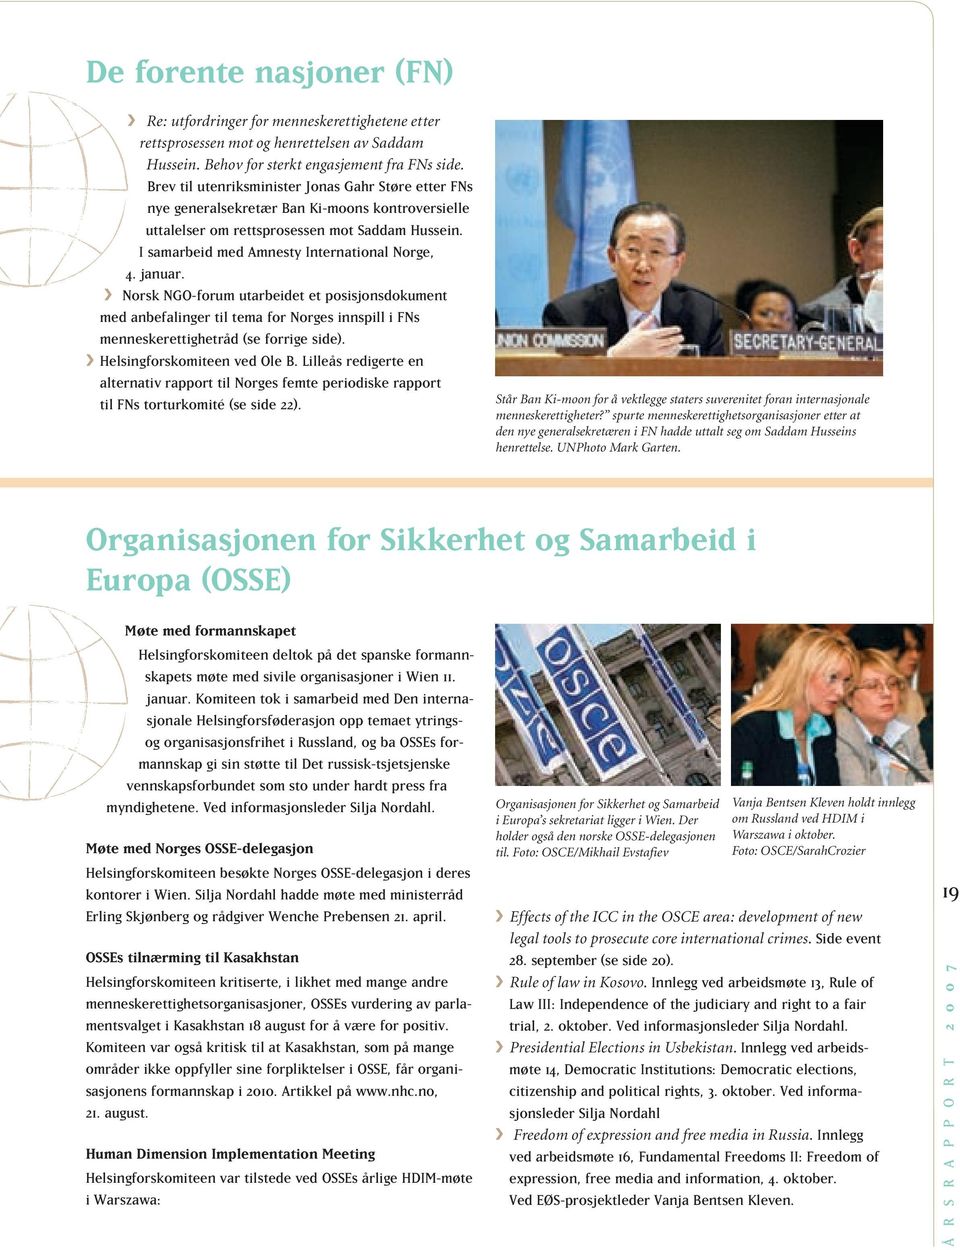 januar. ºº Norsk NGO-forum utarbeidet et posisjonsdokument med anbefalinger til tema for Norges innspill i FNs menneskerettighetråd (se forrige side). ººHelsingforskomiteen ved Ole B.